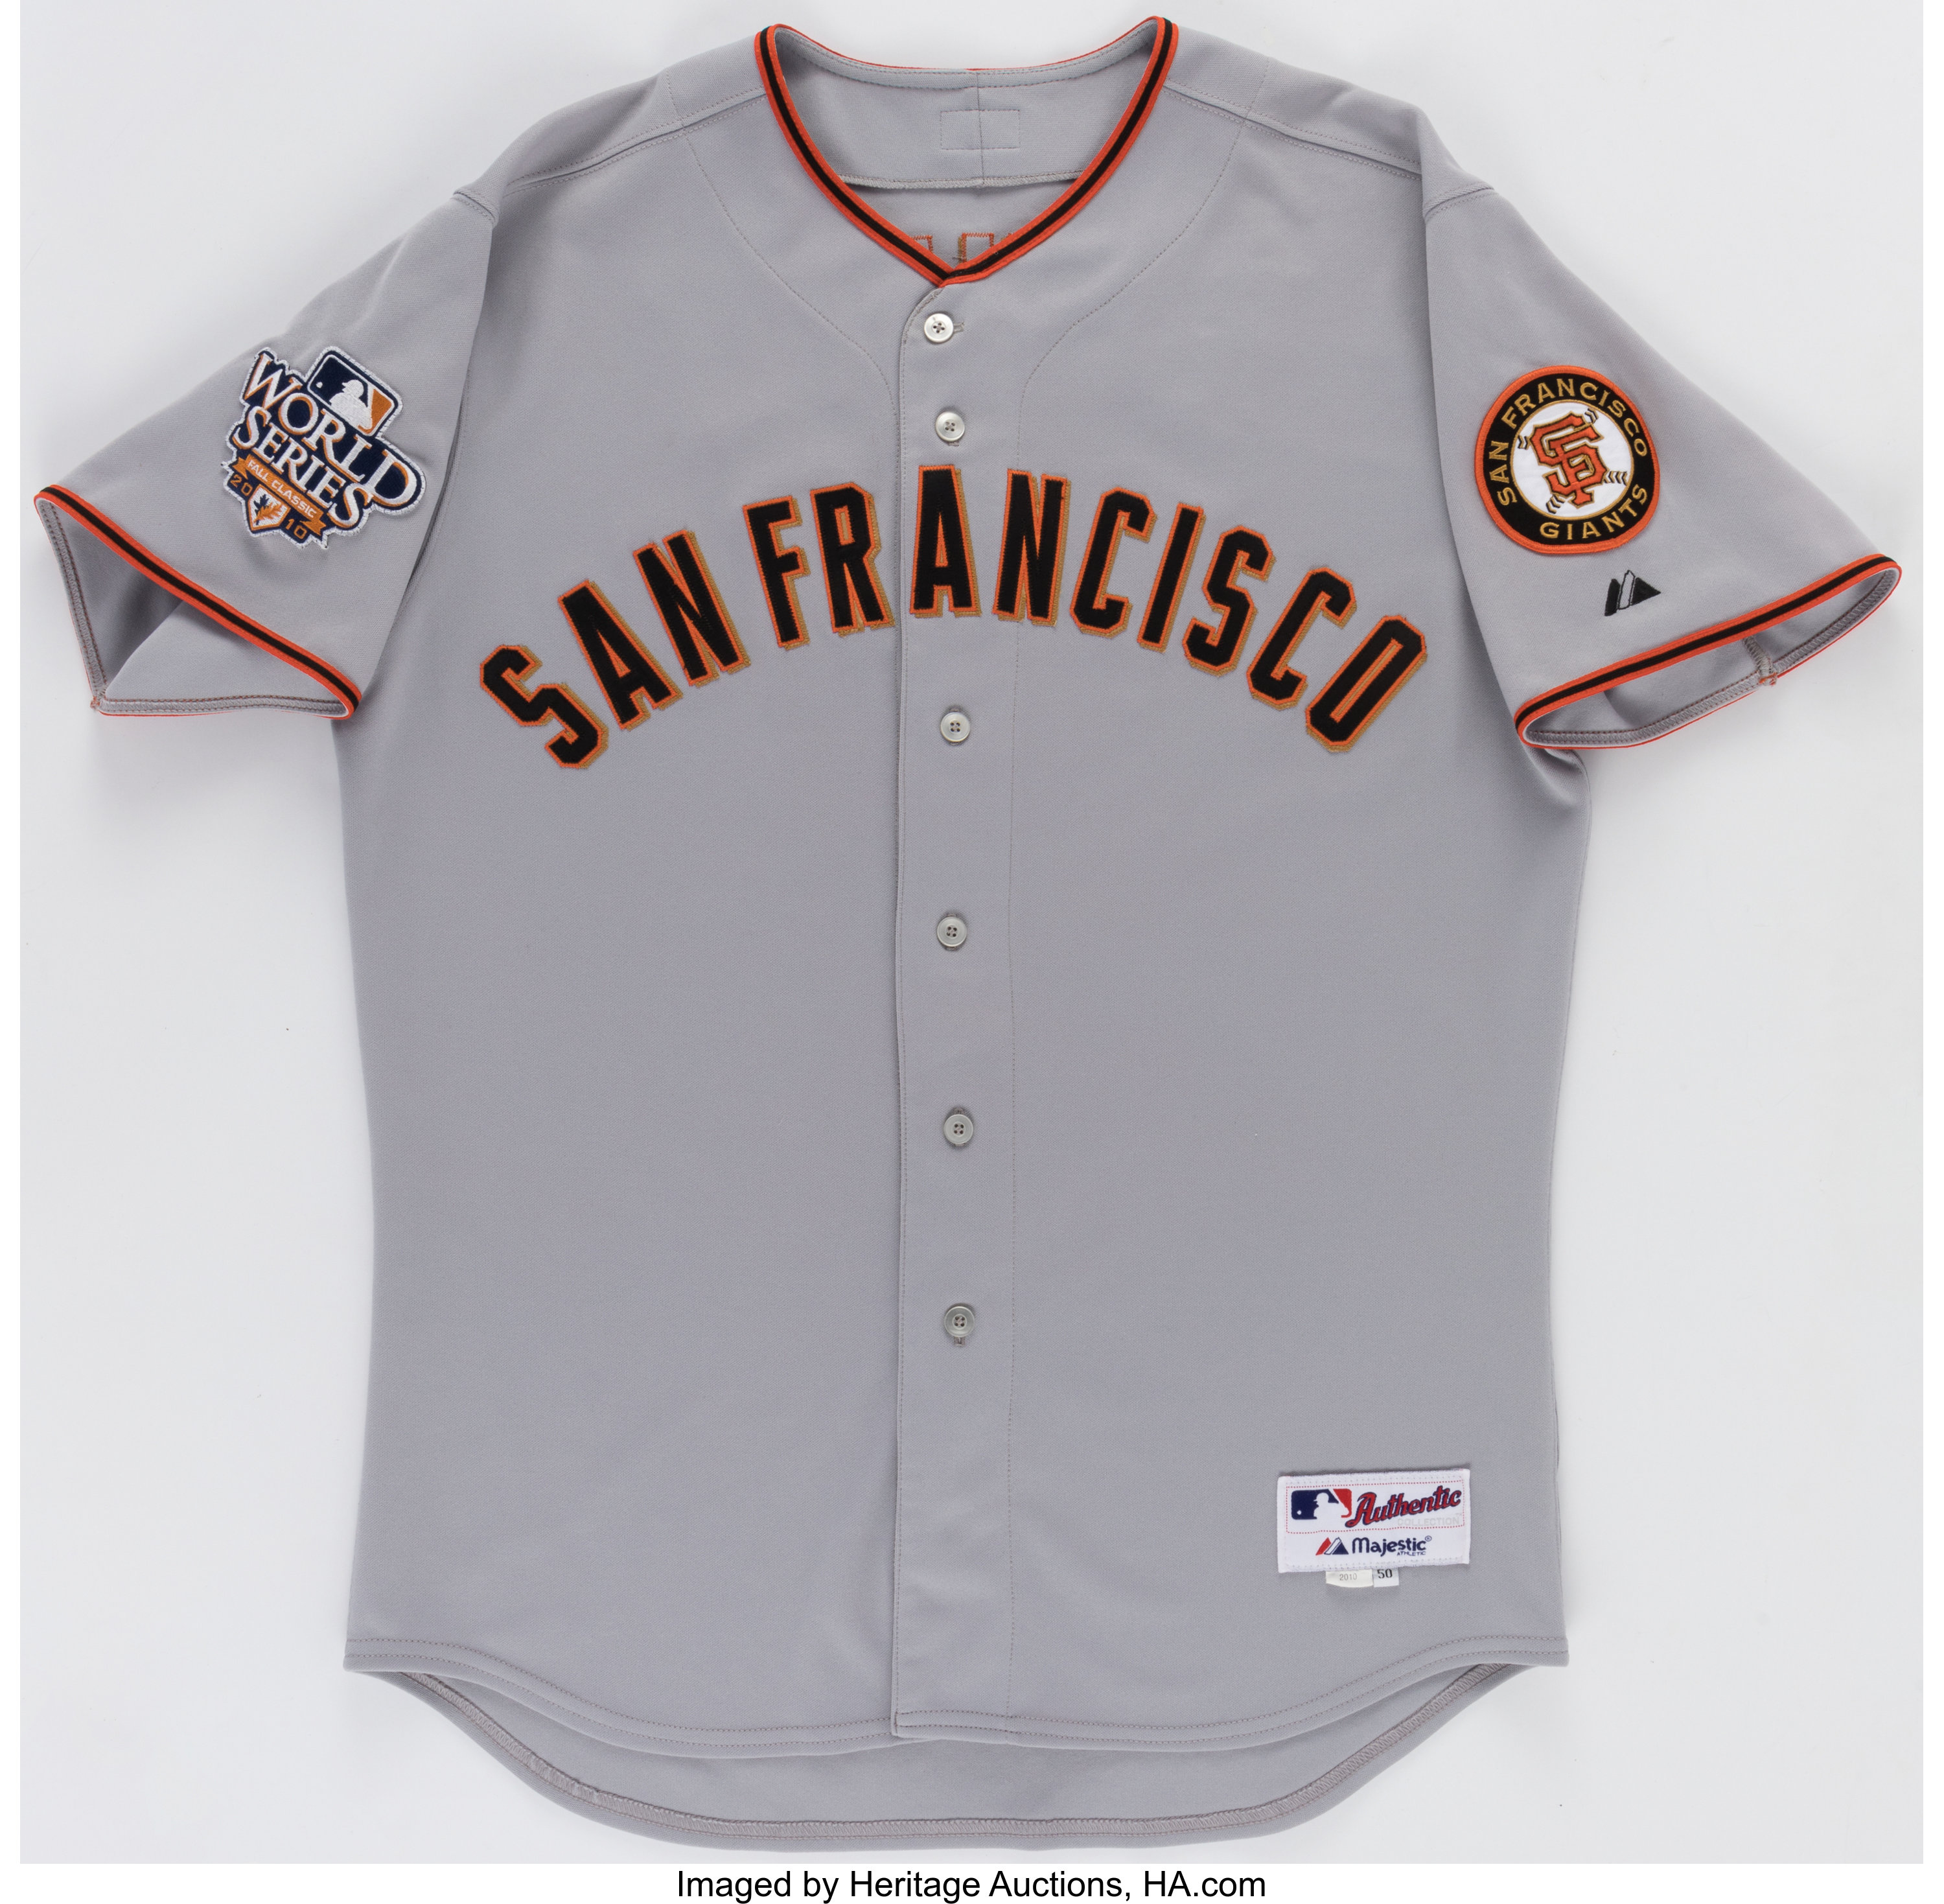 Official San Francisco Giants Gear, Giants Jerseys, Store, San